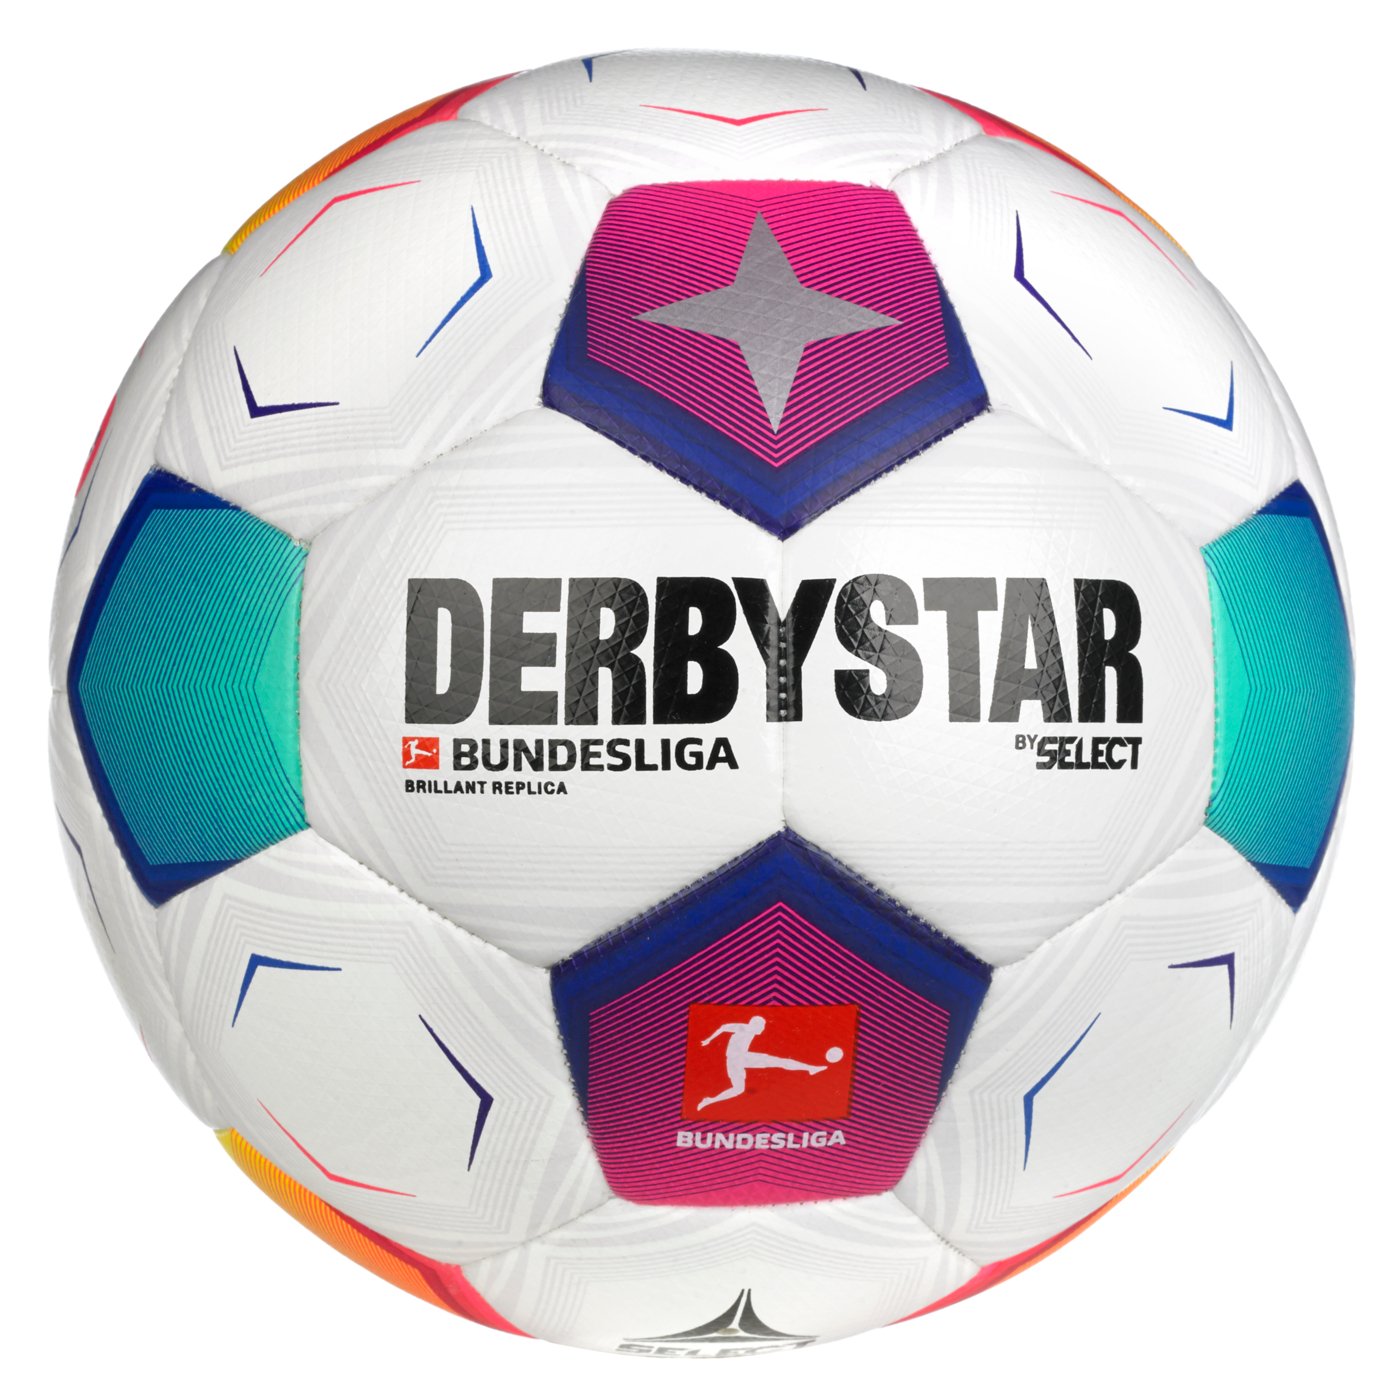 Мяч футбольный SELECT DERBYSTAR Bundesliga Brillant Replica v23 (672) бело/син/фиолет, 4, 4